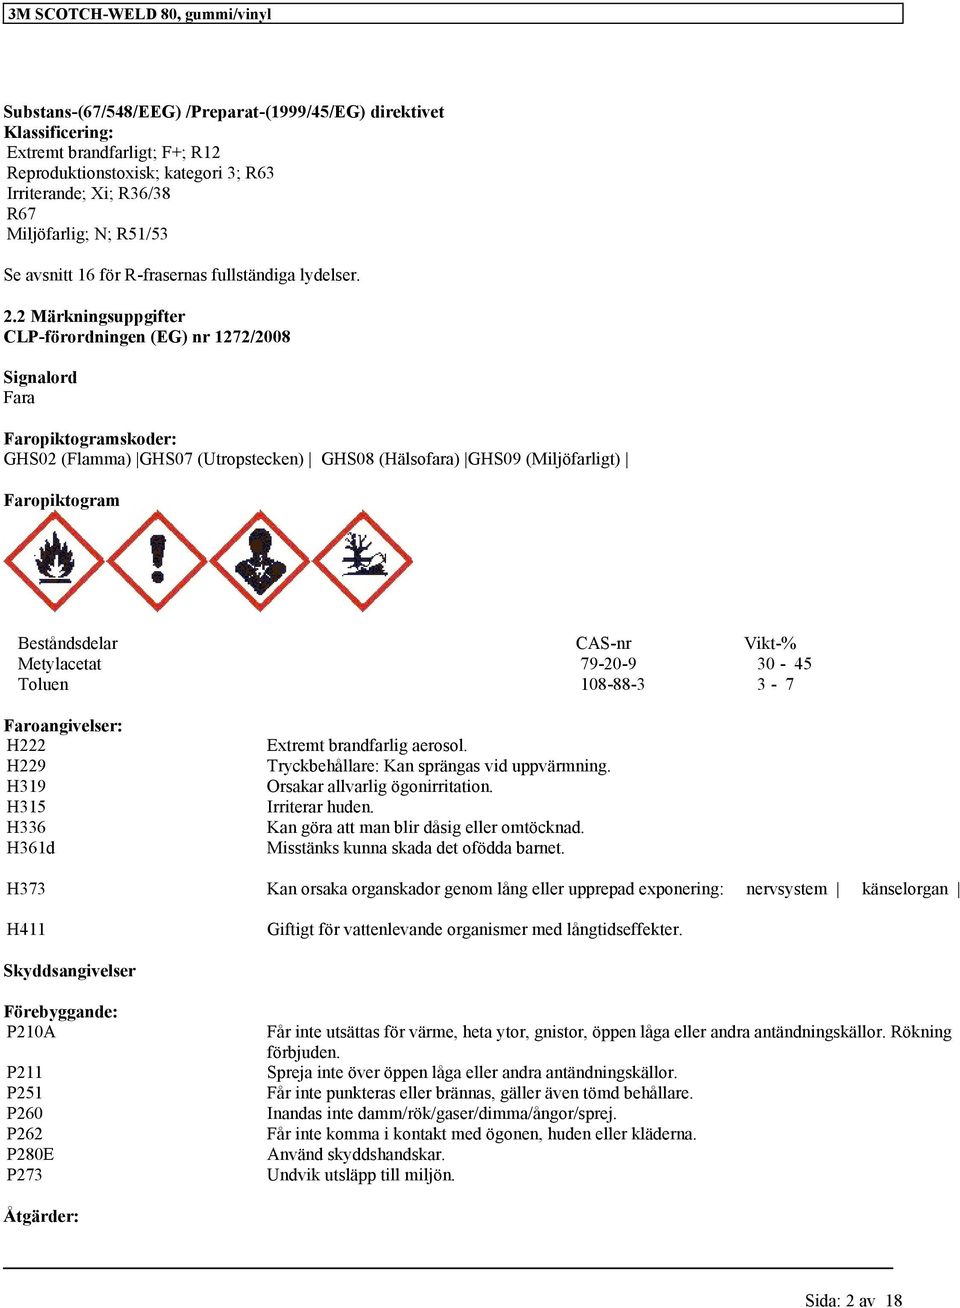 2 Märkningsuppgifter CLP-förordningen (EG) nr 1272/2008 Signalord Fara Faropiktogramskoder: GHS02 (Flamma) GHS07 (Utropstecken) GHS08 (Hälsofara) GHS09 (Miljöfarligt) Faropiktogram Beståndsdelar